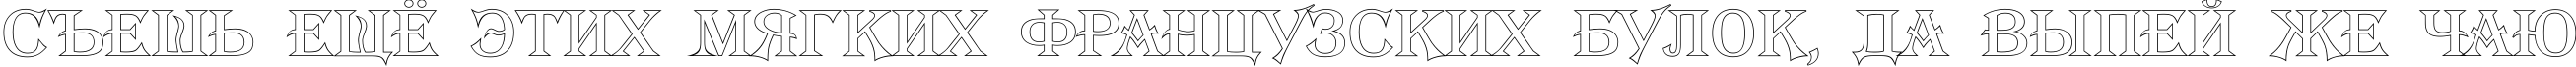 Пример написания шрифтом a_AlgeriusOtl текста на русском